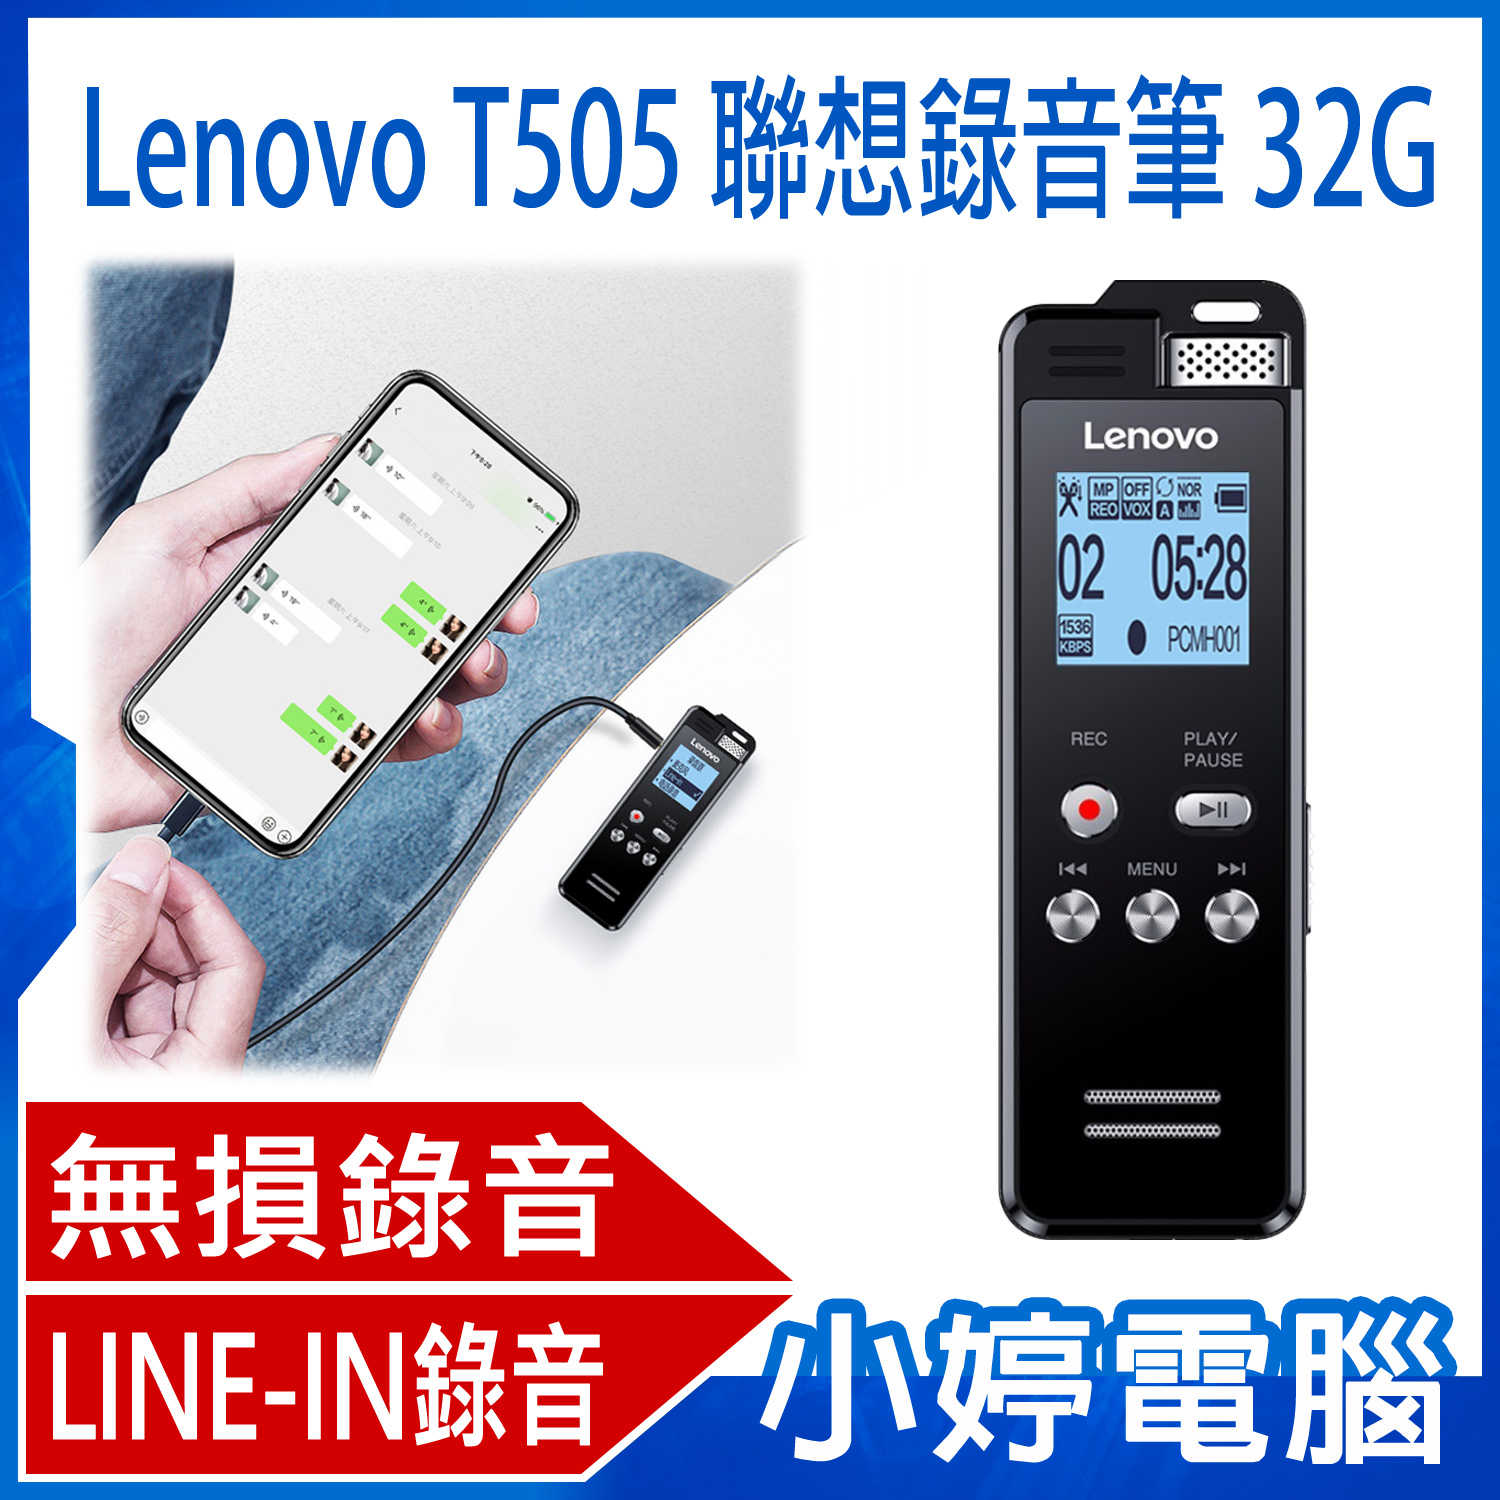 【小婷電腦】全新 Lenovo T505 聯想錄音筆 32G 密碼保護 錄音檔編輯 LINE-IN錄音 支援TF卡